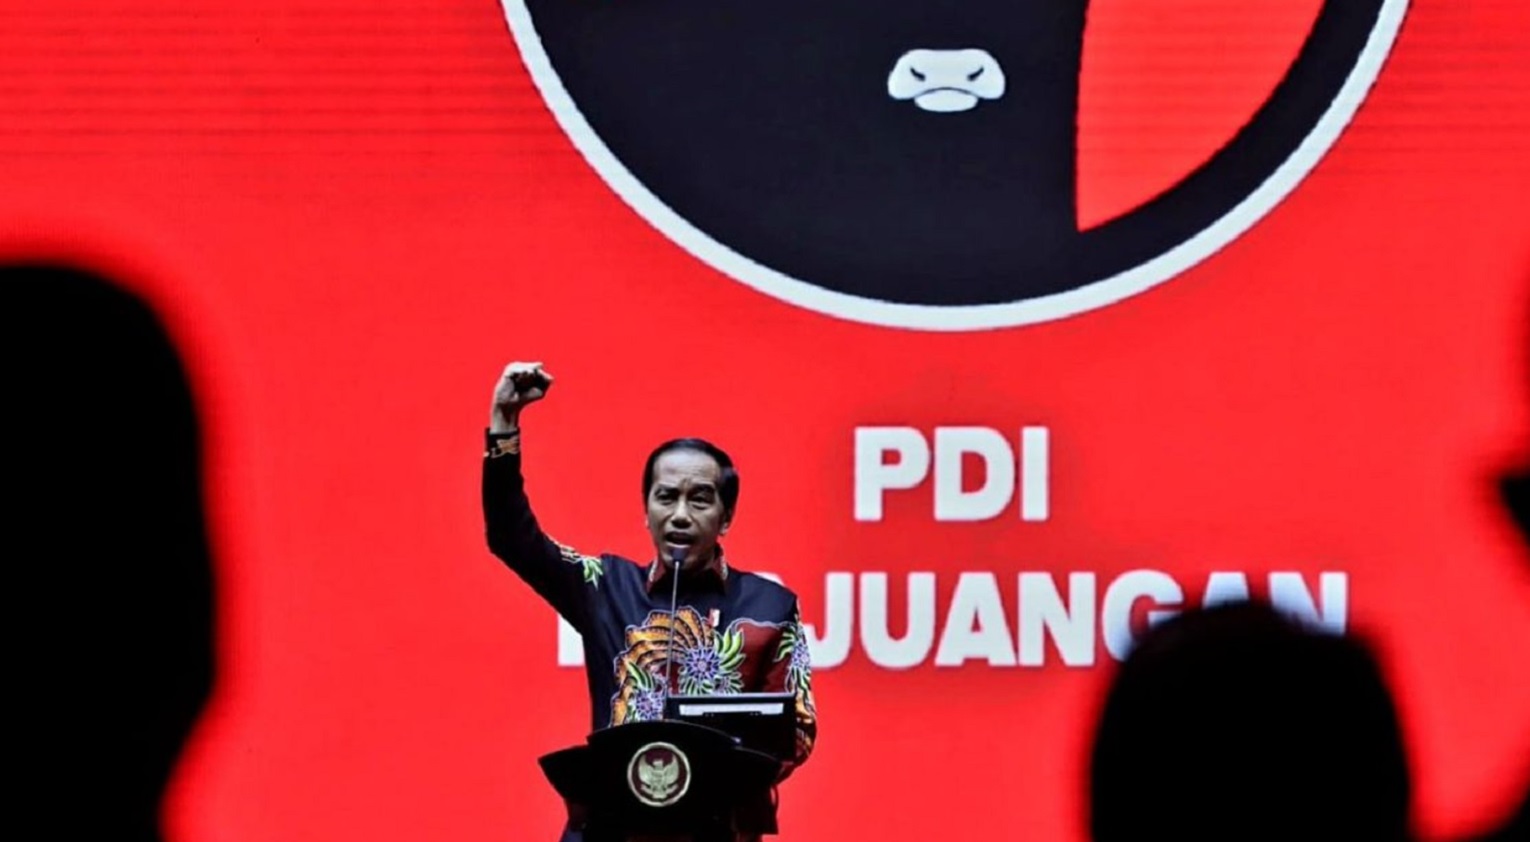 Sakit Hati! PDIP Sindir Keras Jokowi: Diawali dengan Blusukan, Diakhiri dengan Tusukan